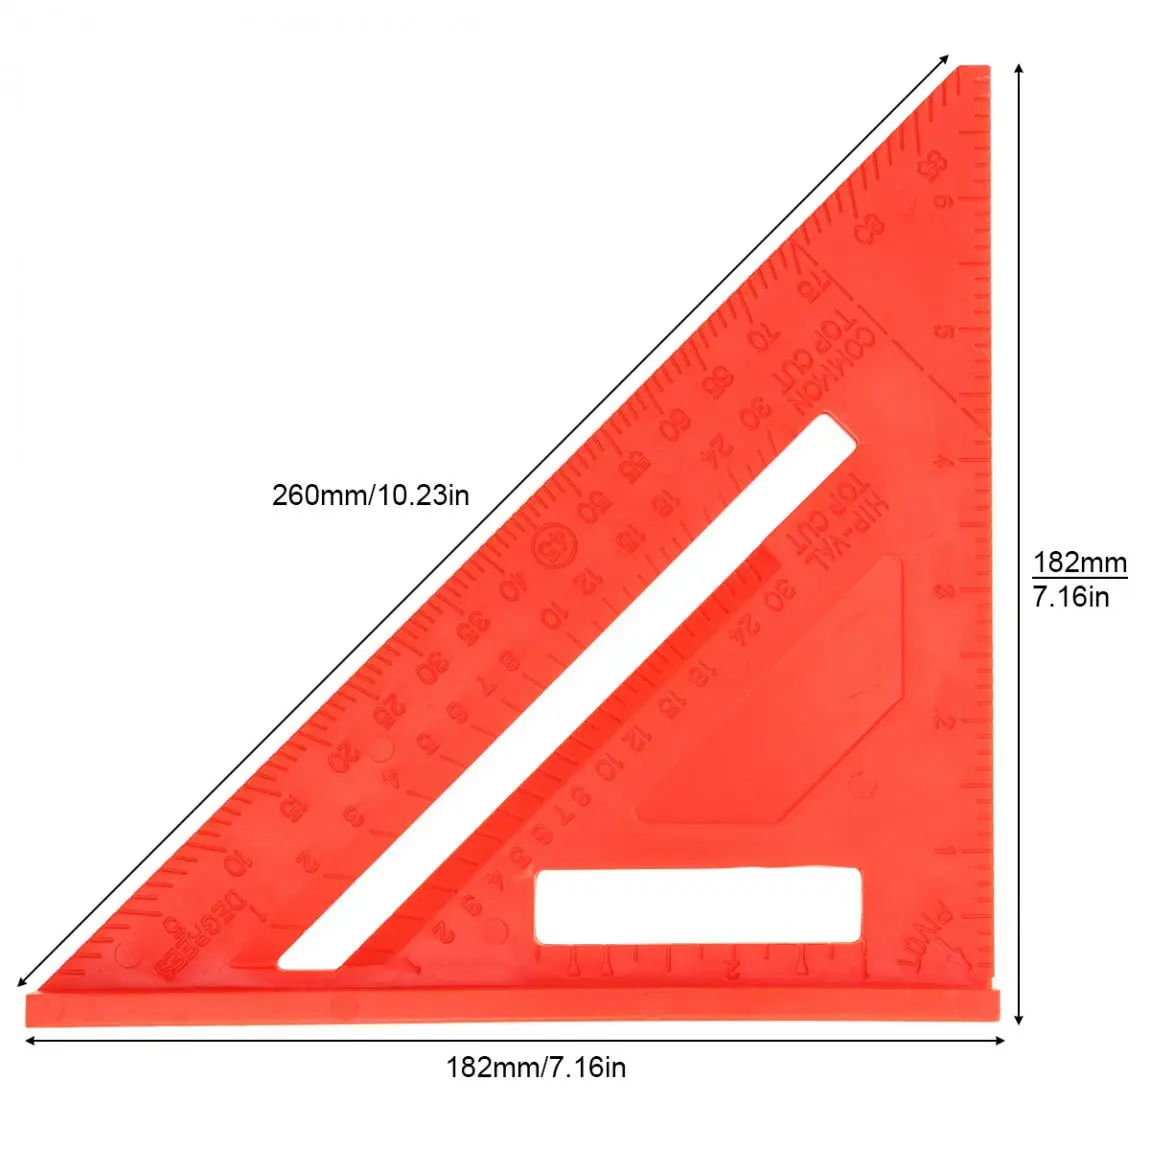 7 дюймов линейка Red пластмасс под прямым углом Треугольники линейка с 0,1 дюймов точность и 45 ° угол для деревообработки измерения